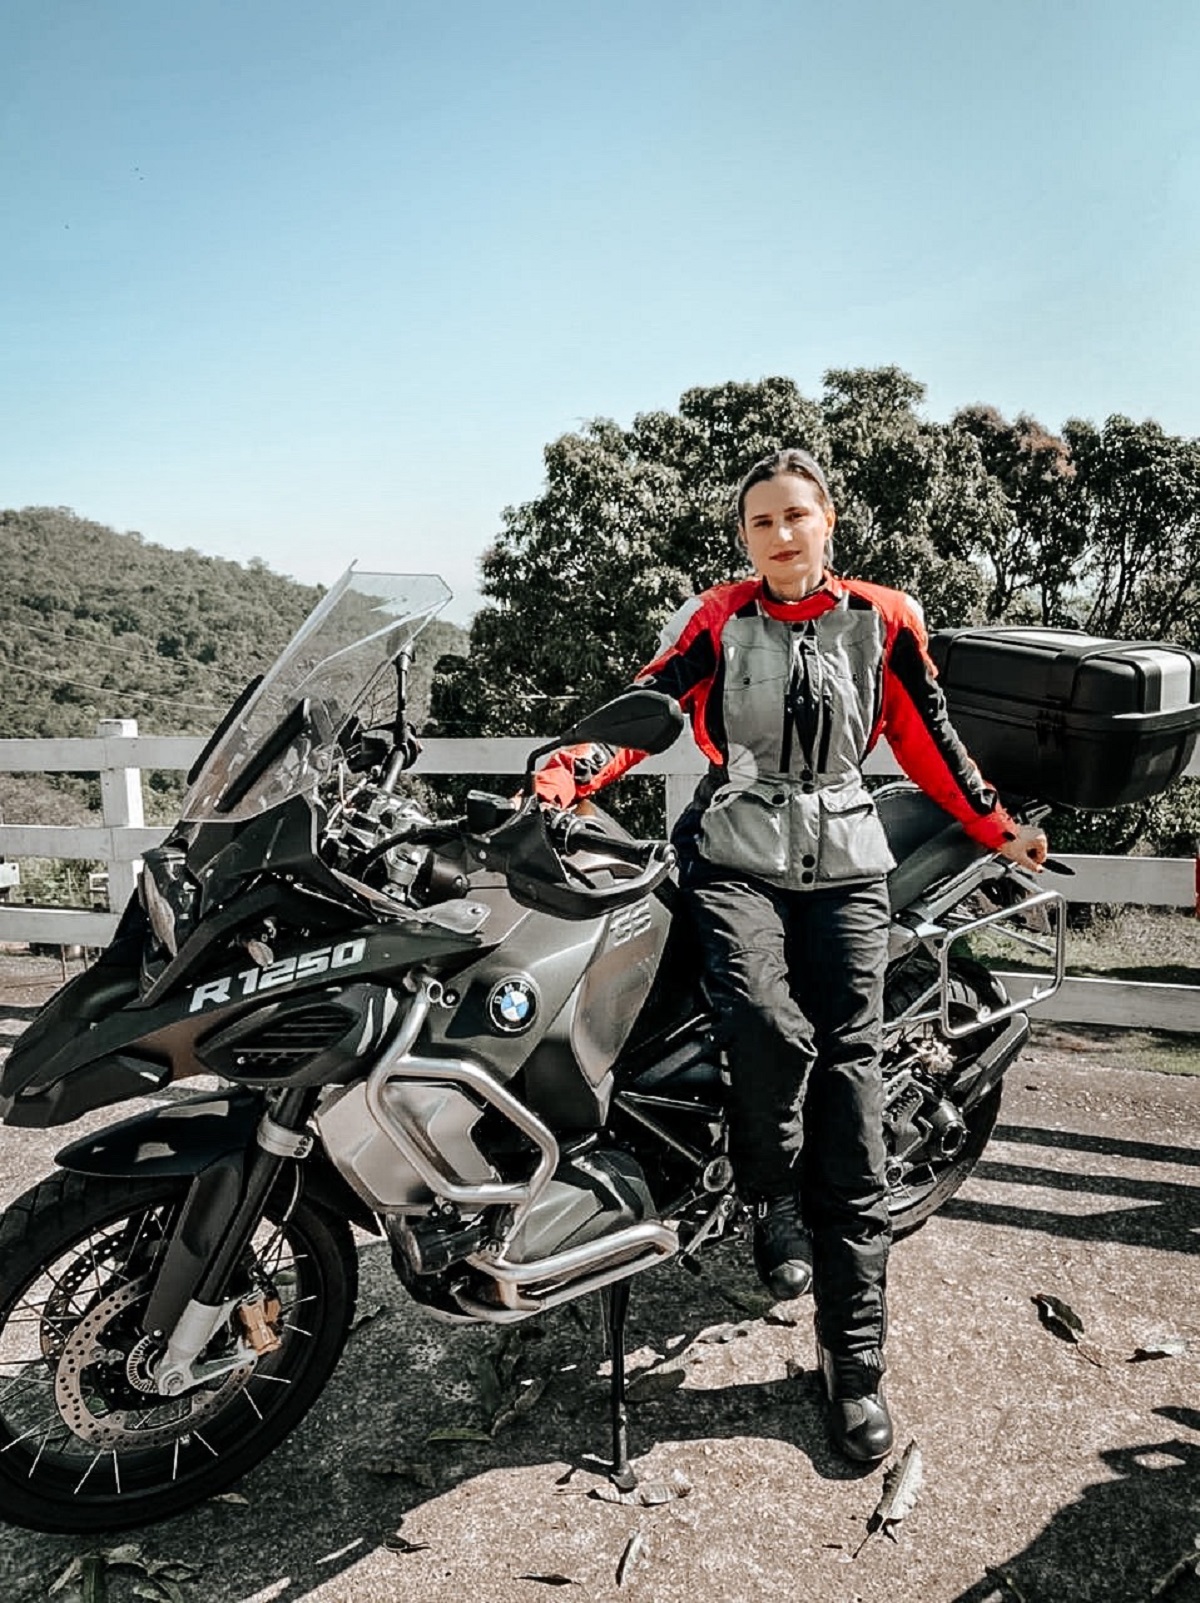 engenheira ana tavares com sua moto bmw r 1250 gs adventure